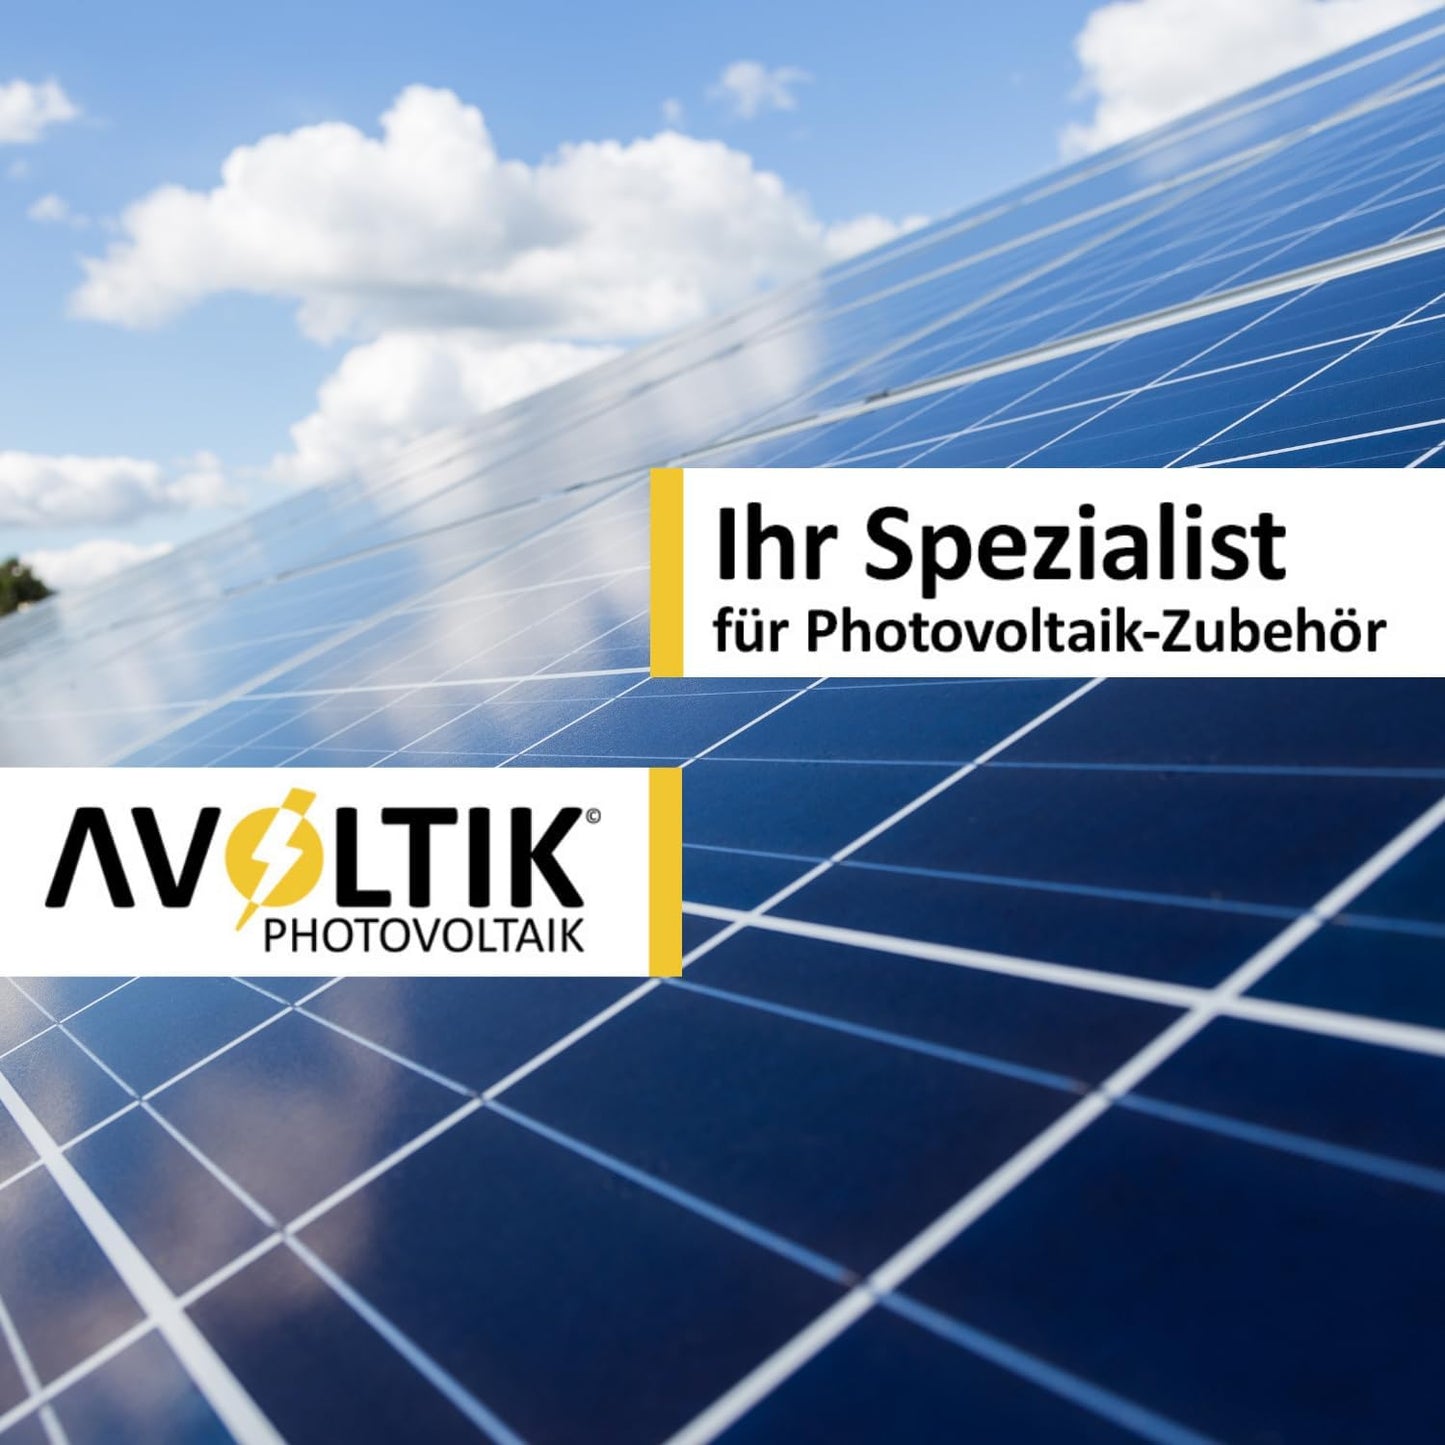 AVVOLTIK Photovoltaik - Ihr Spezialist für Photovoltaik-Zubehör